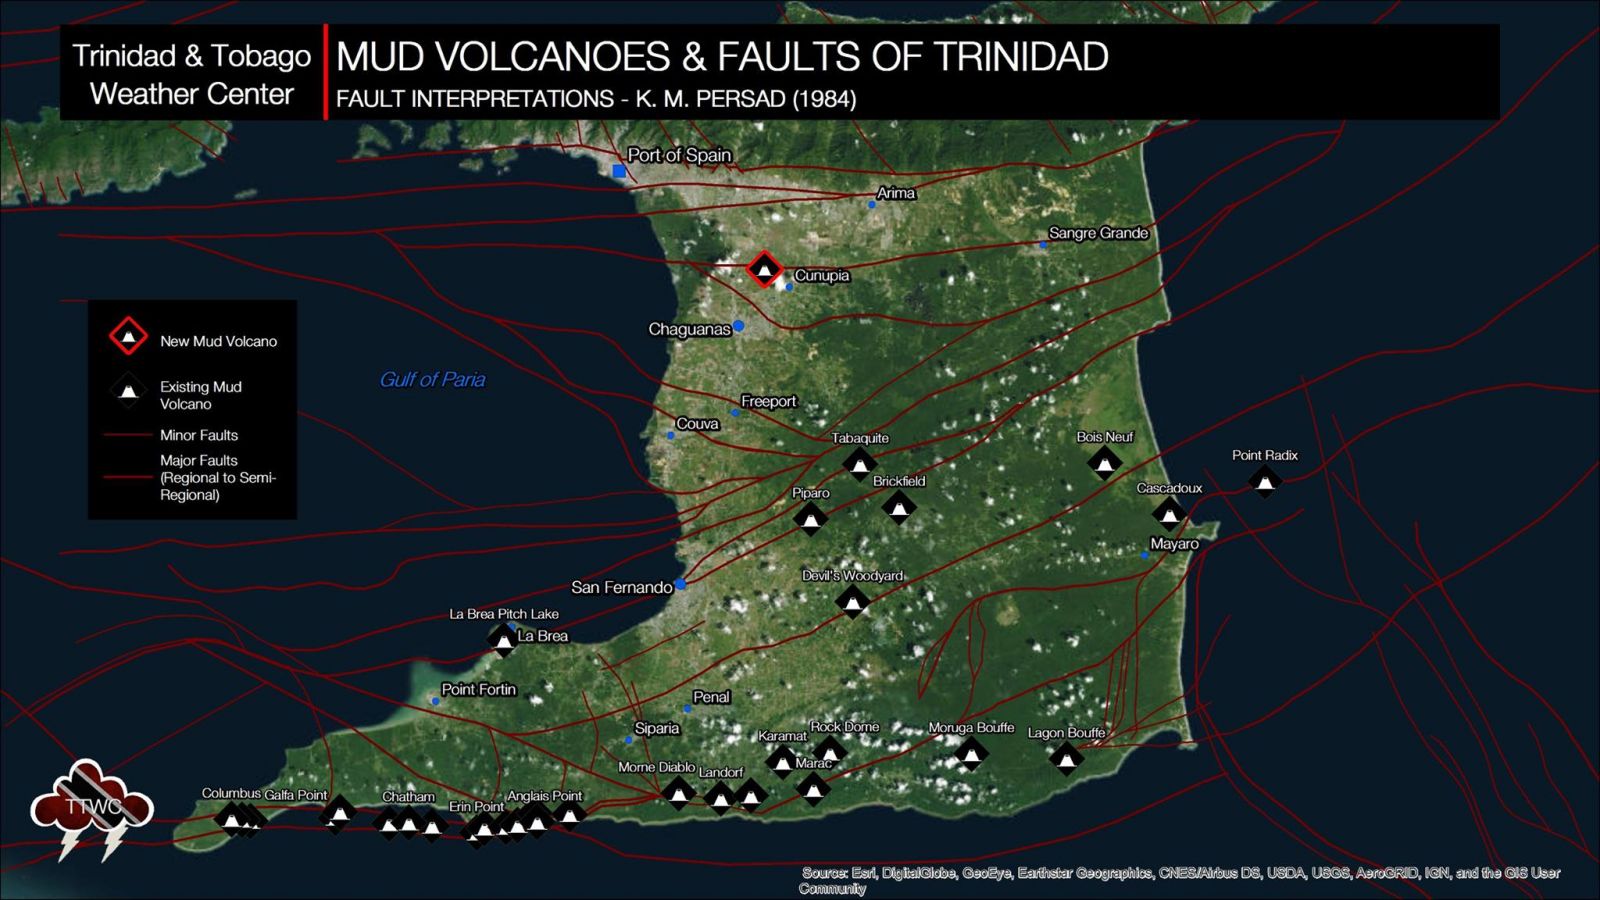 Location of Cunupia mud volcano, Trinidad and Tobago